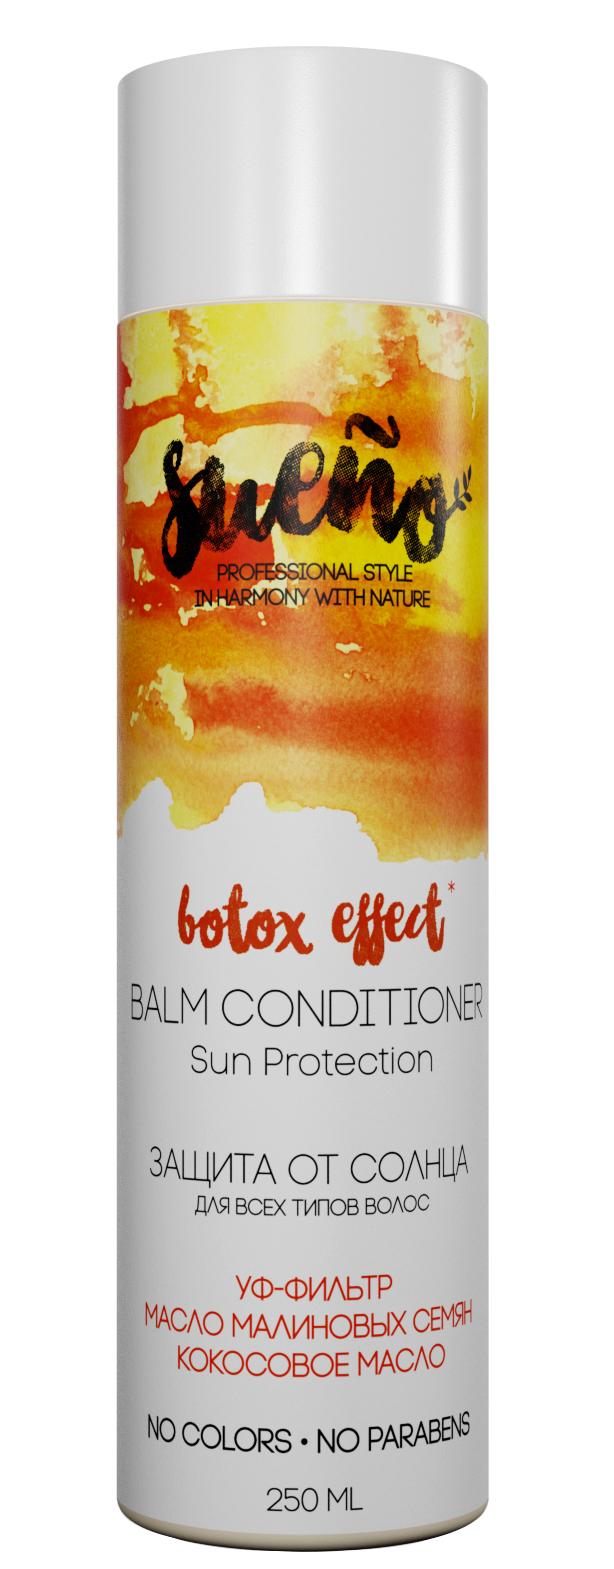 Кондиционер "Защита от солнца" для всех типов волос купить в онлайн экомаркете